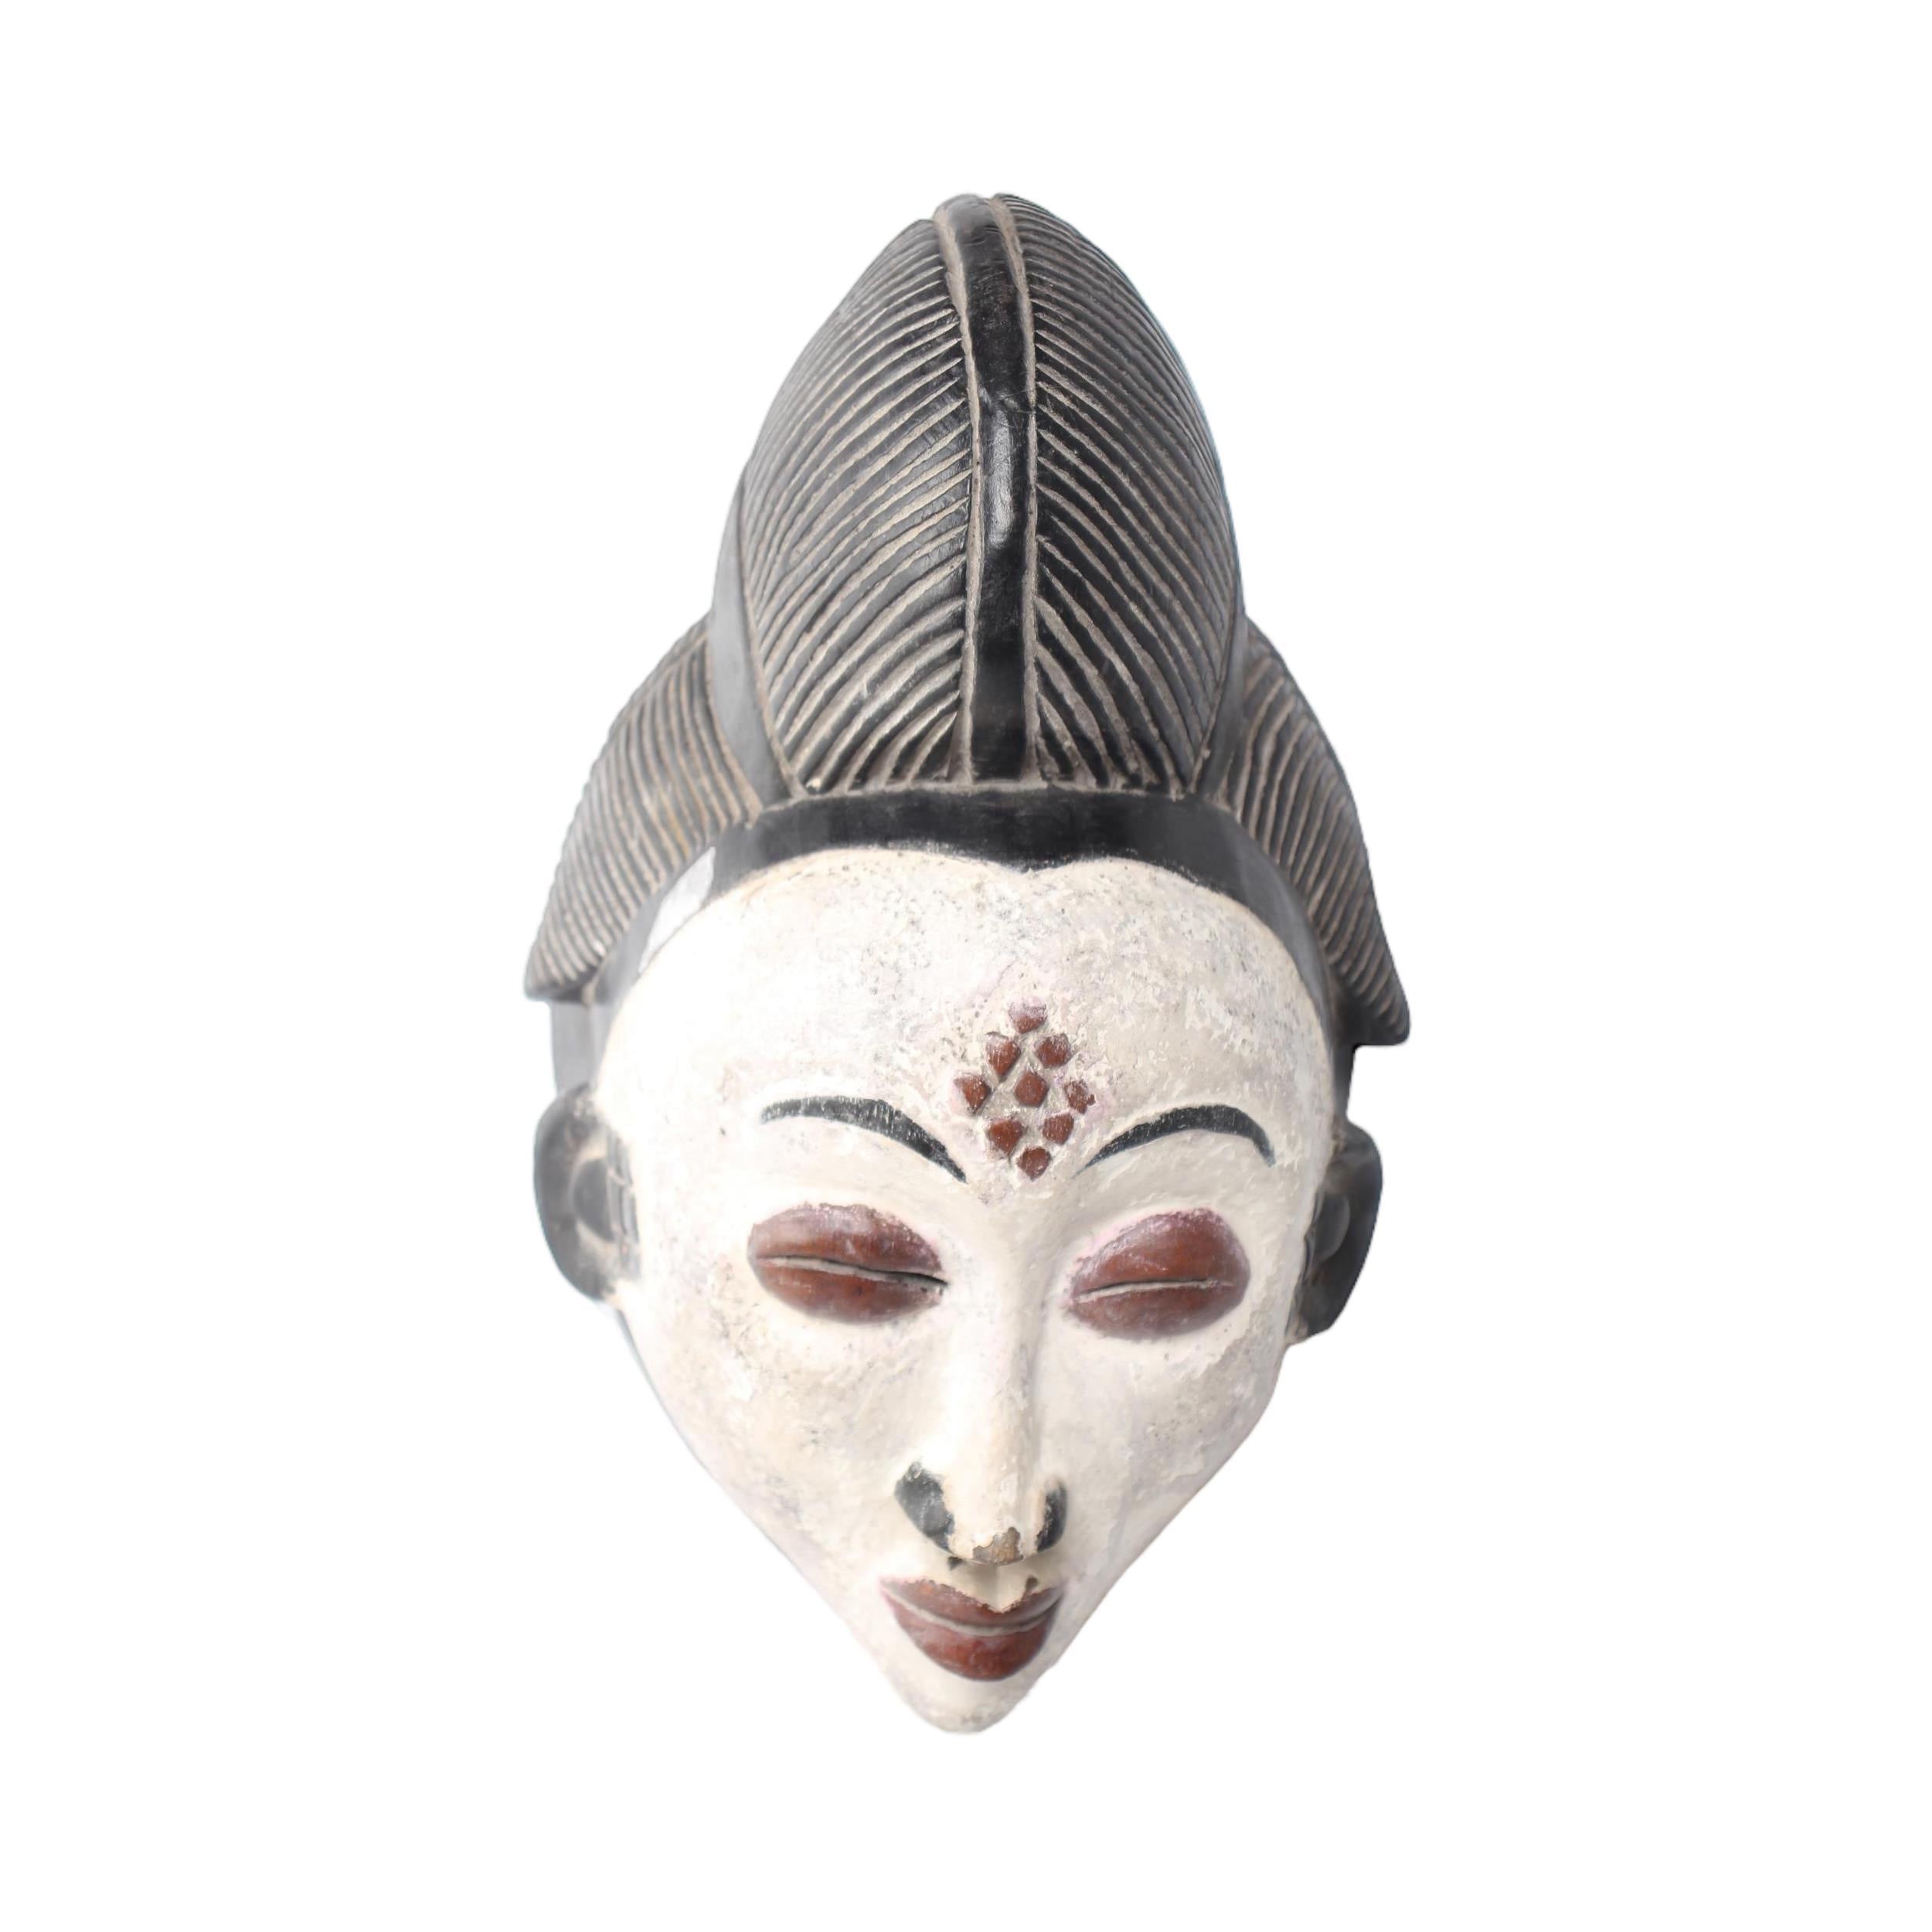 Punu Tribe Mask ~14.6" Tall - Mask